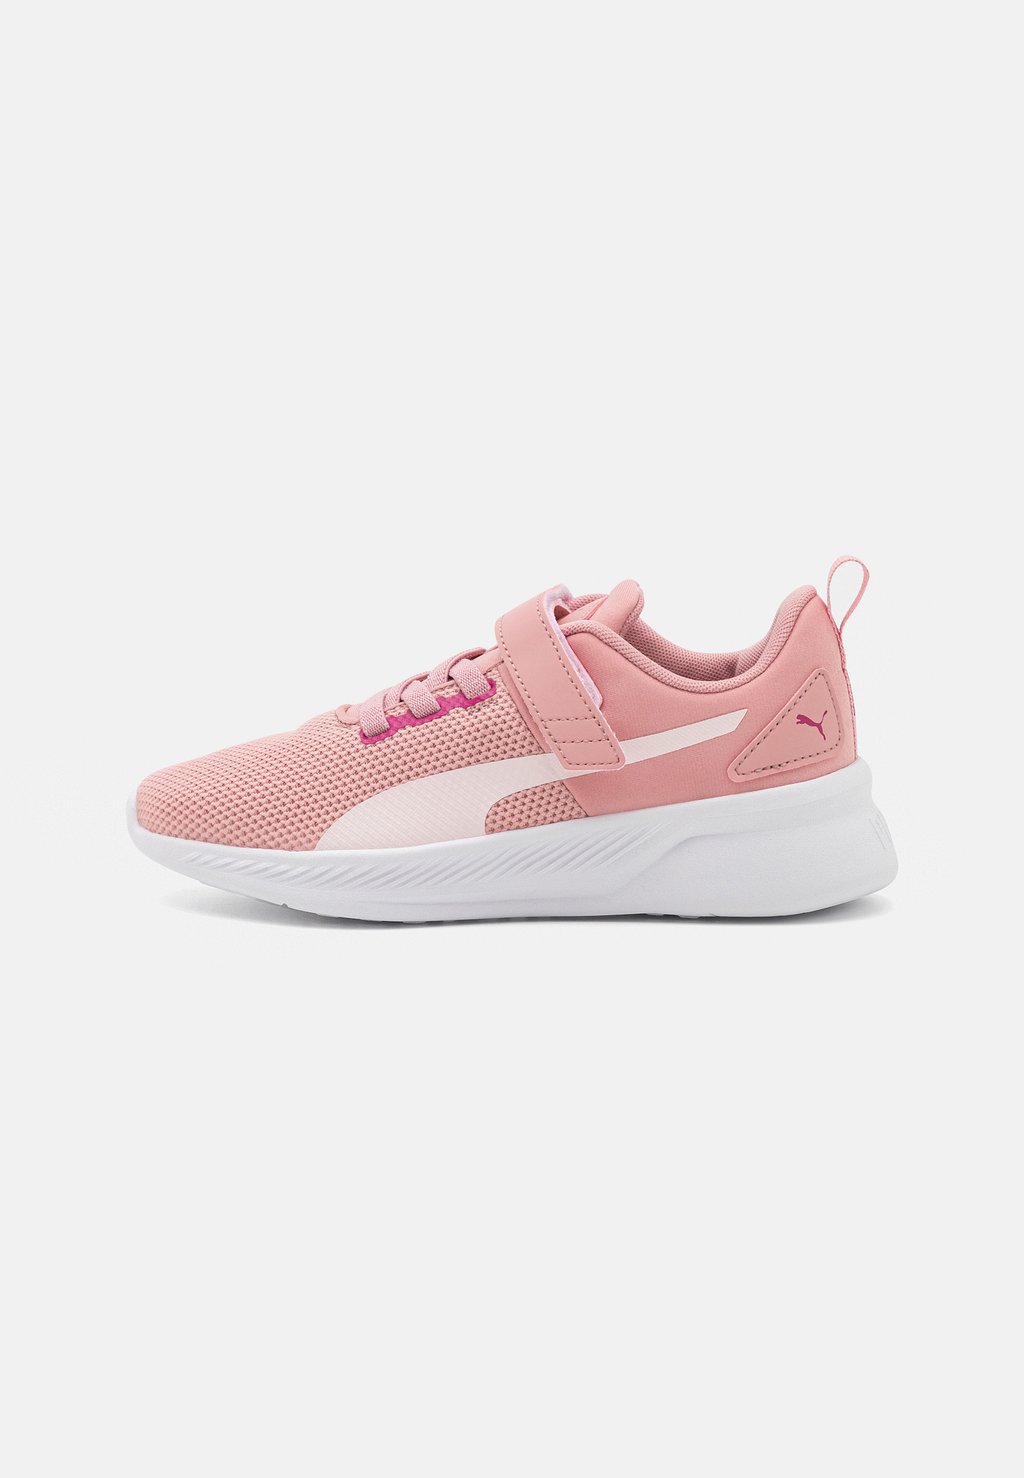 Нейтральные кроссовки Flyer Runner Puma, цвет future pink/frosty pink